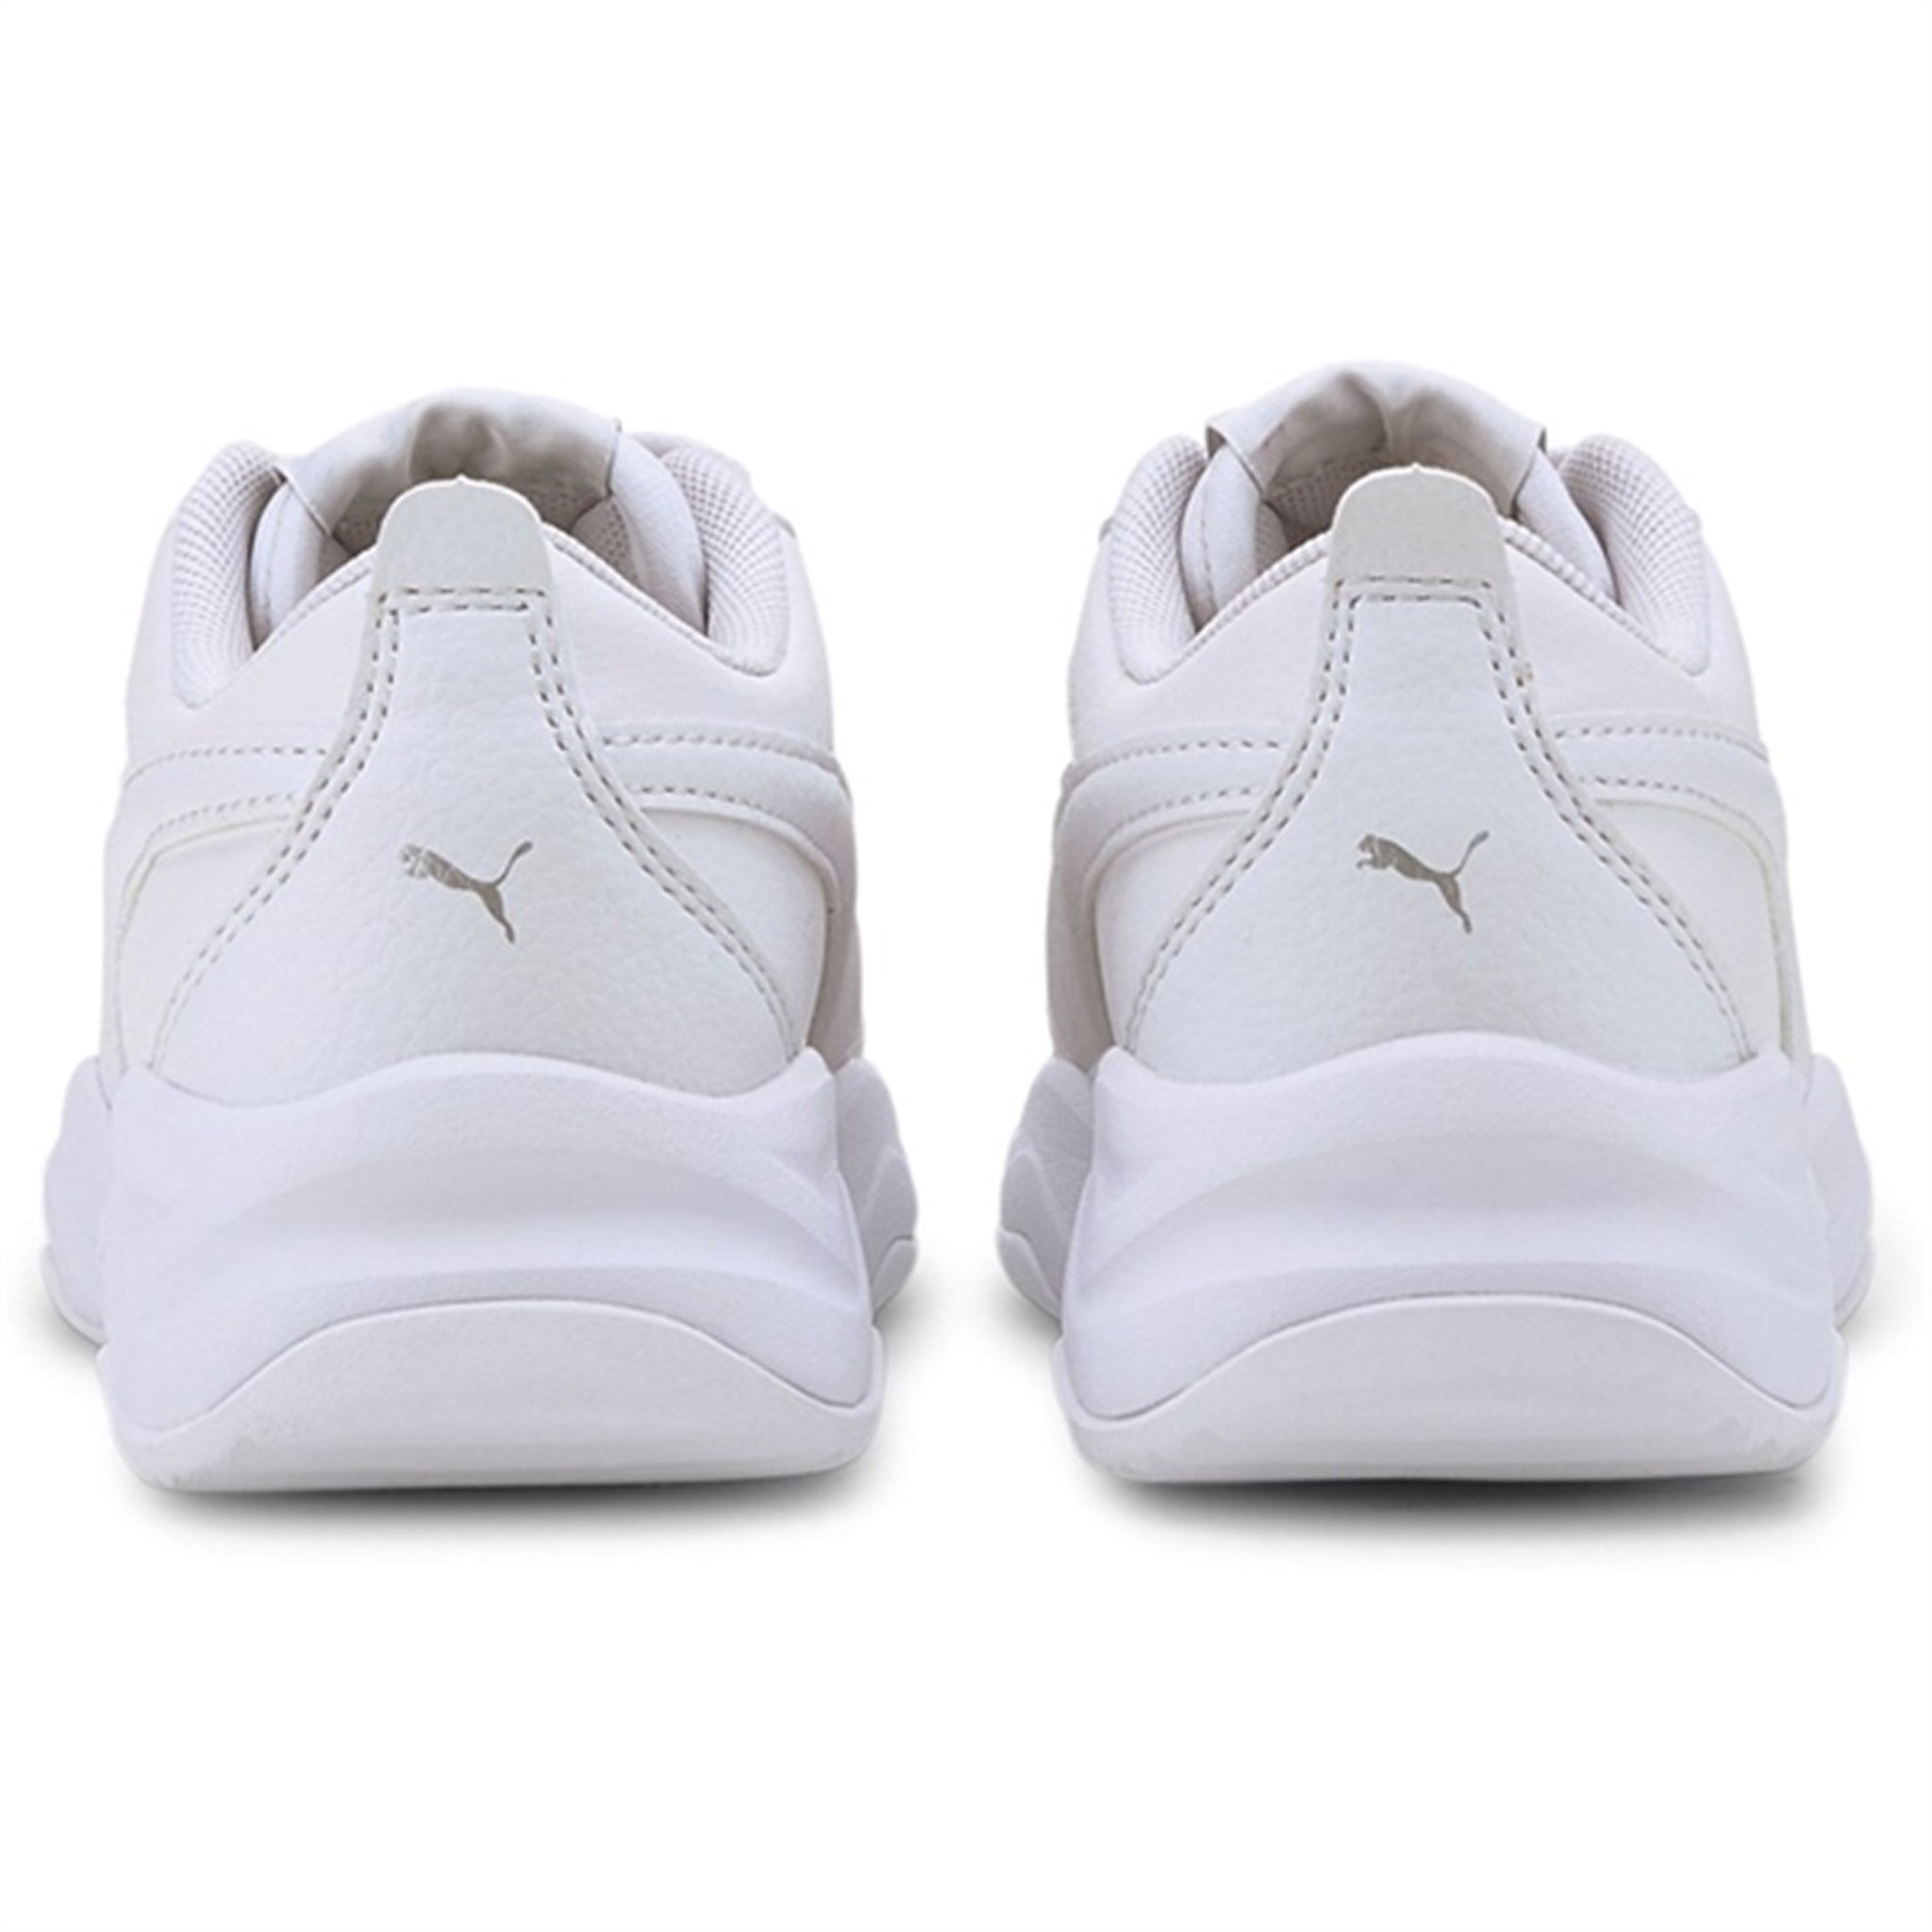 Puma Cilia Mode PS White-Silver-Gray Violet Sneakers 4